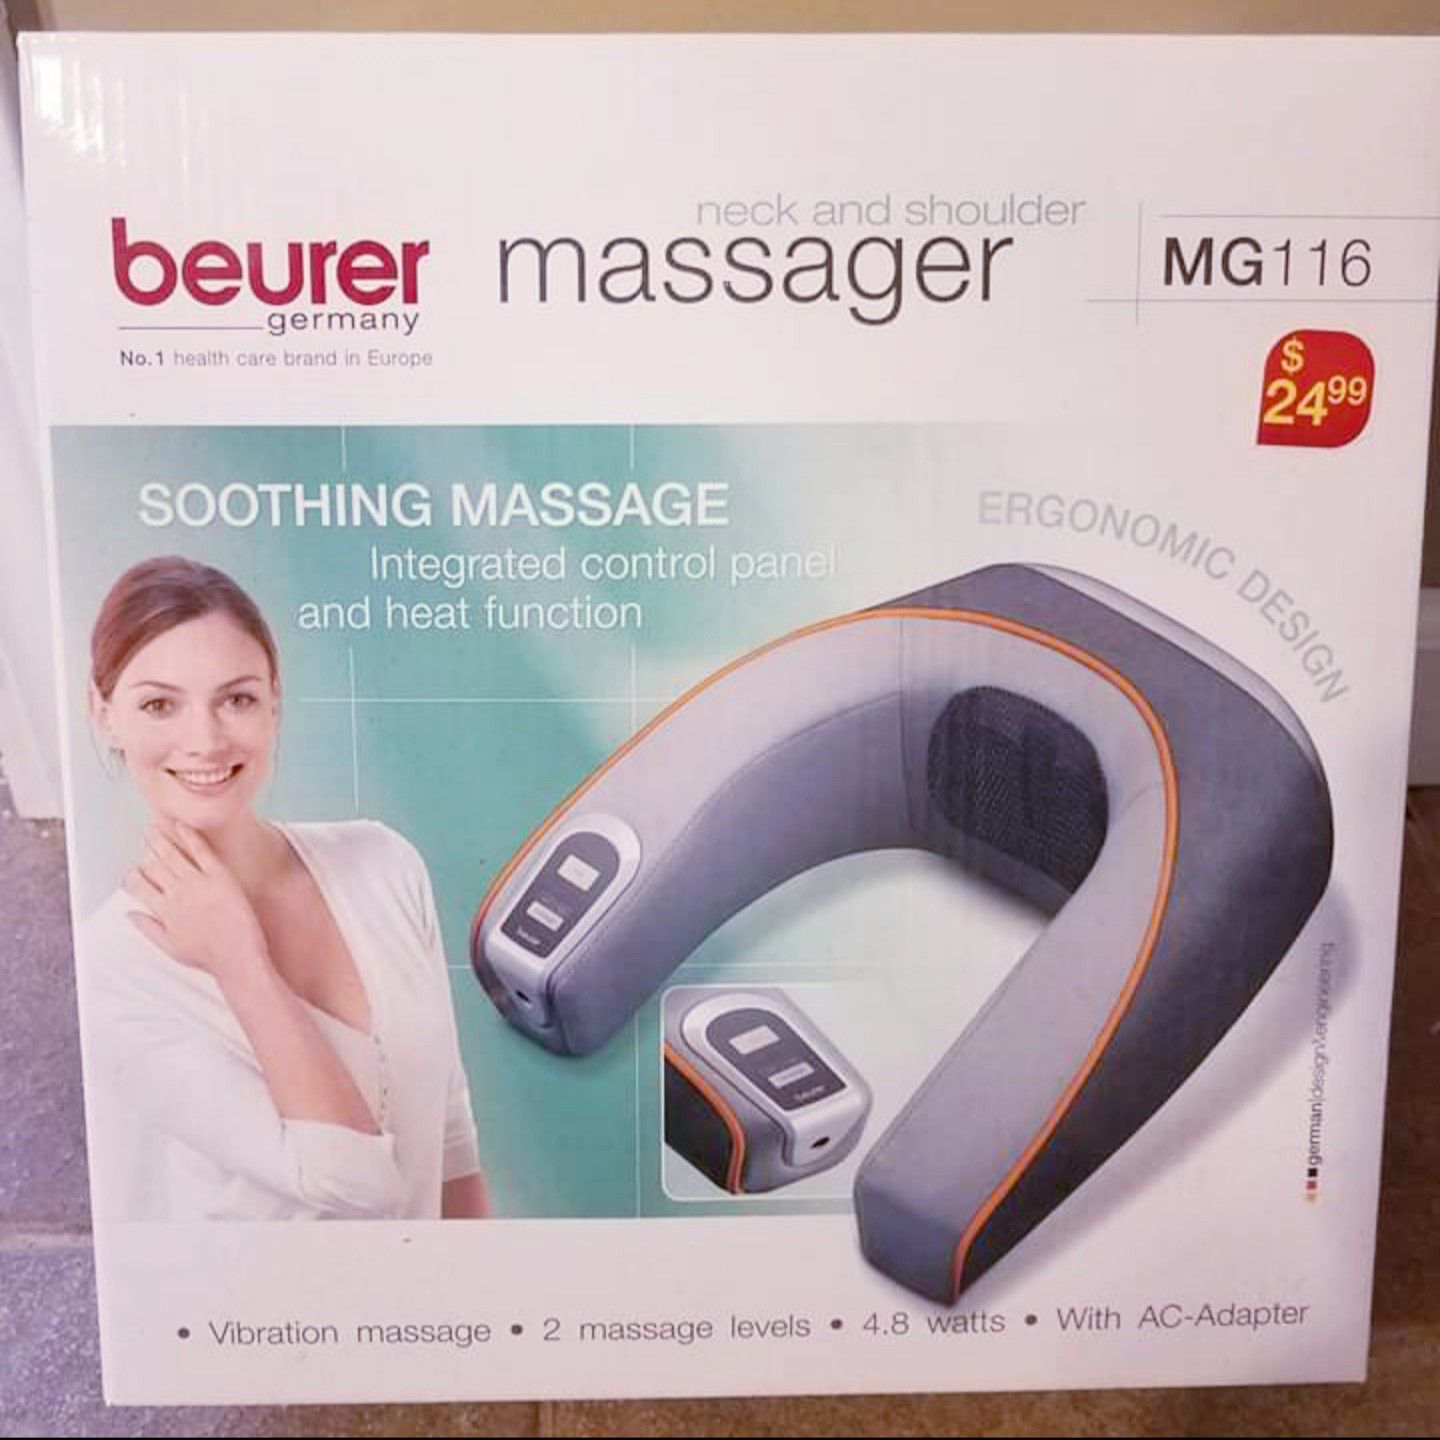 Neck/Shoulder Massager by Beurer (Germany)